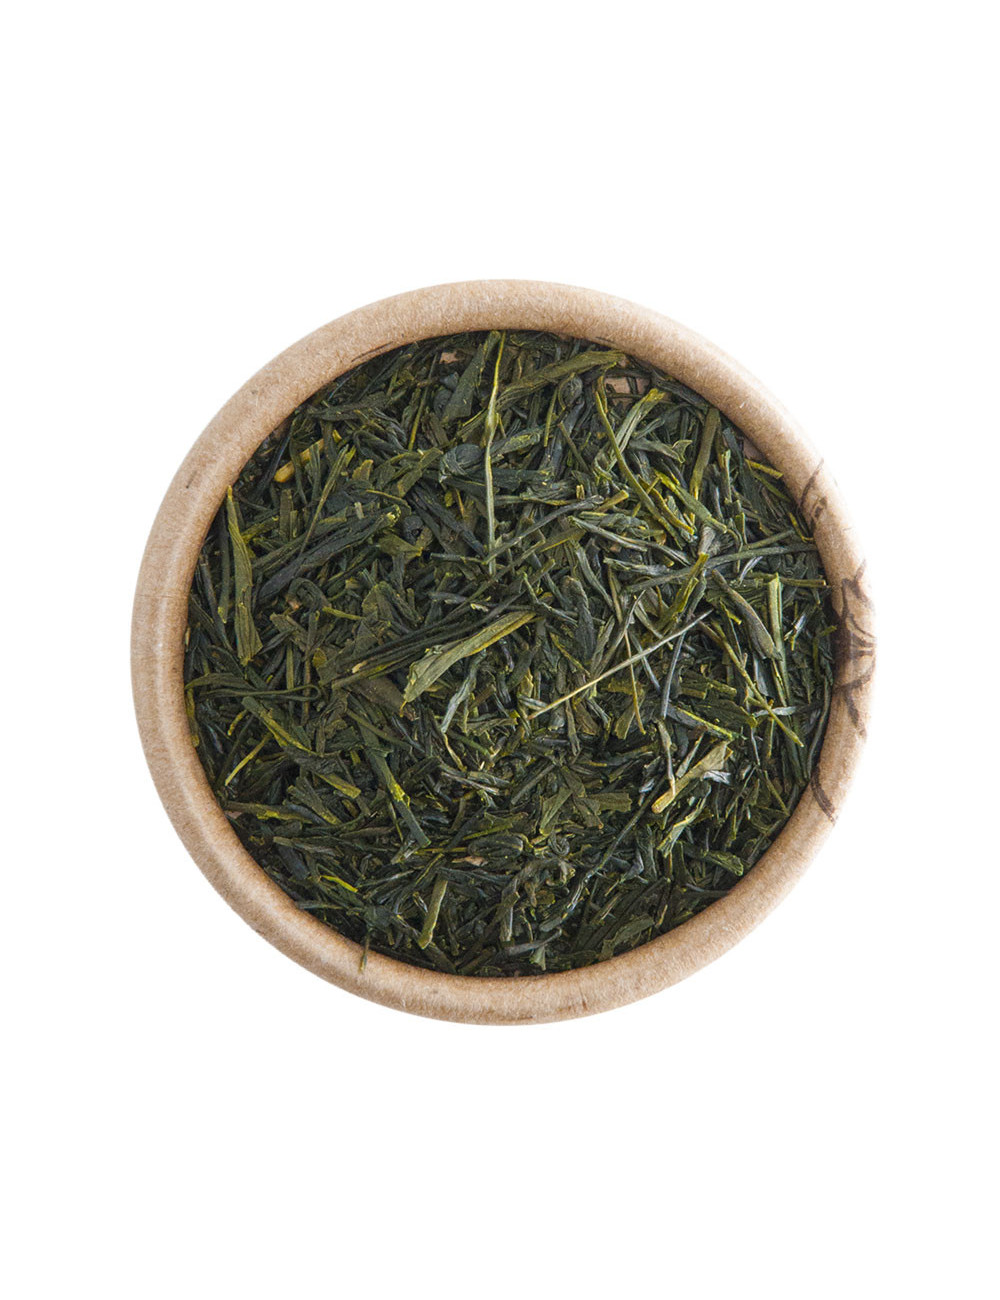 Japan Gyokuro BIO tè verde - La Pianta del Tè shop online